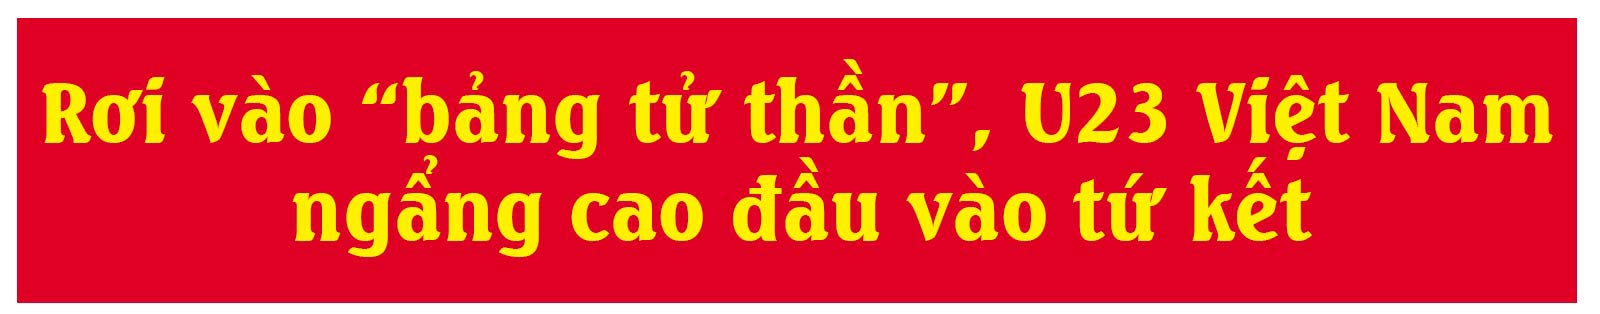 U23 Việt Nam: Hành trình trải bước trên hoa hồng và giấc mơ có thật - 3